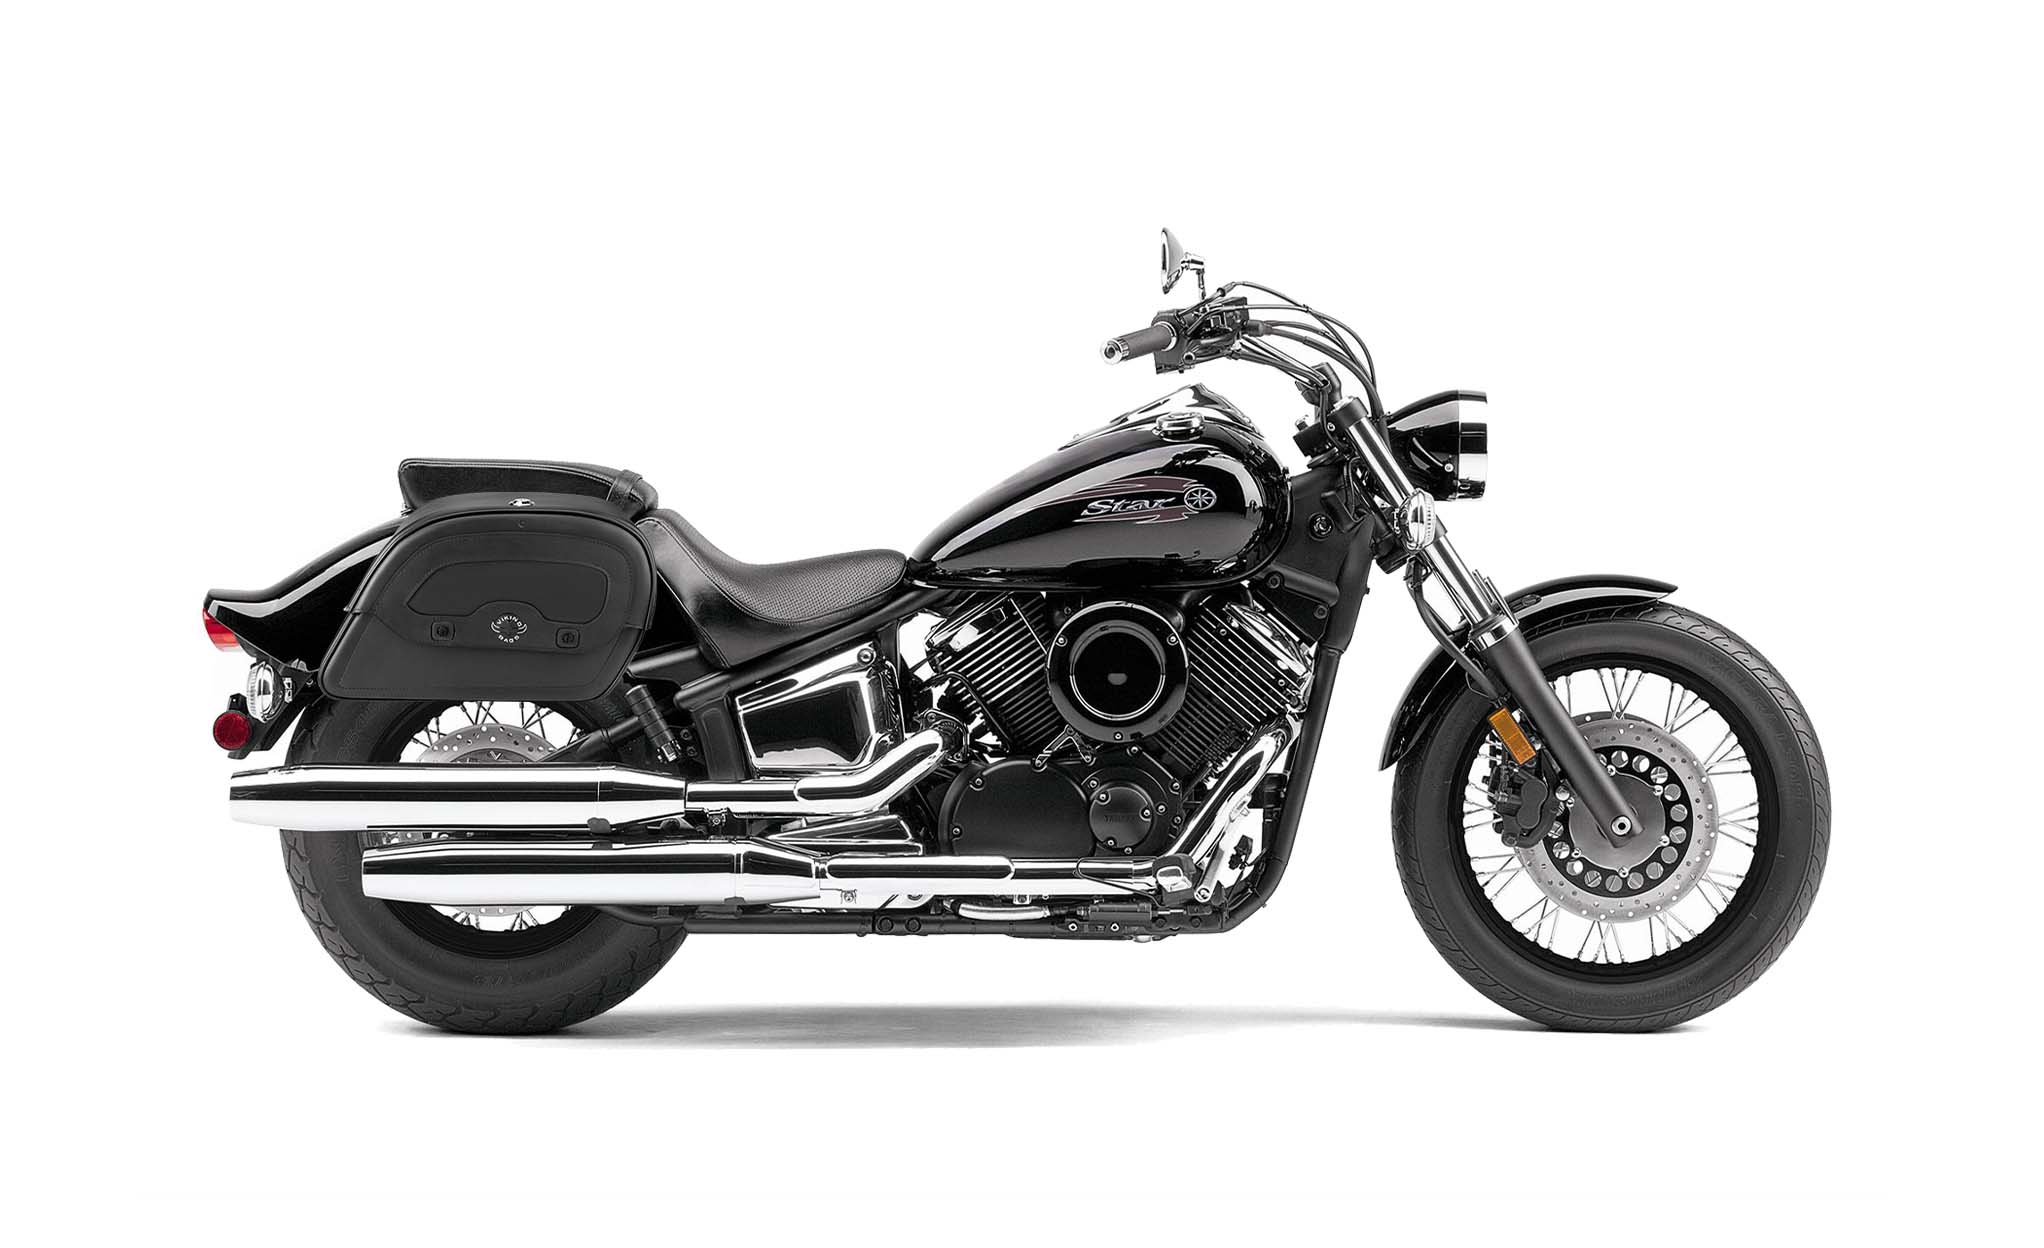 Viking Warrior Medium Yamaha V Star 1100 Custom Xvs11T Leather Motorcycle Saddlebags on Bike Photo @expand